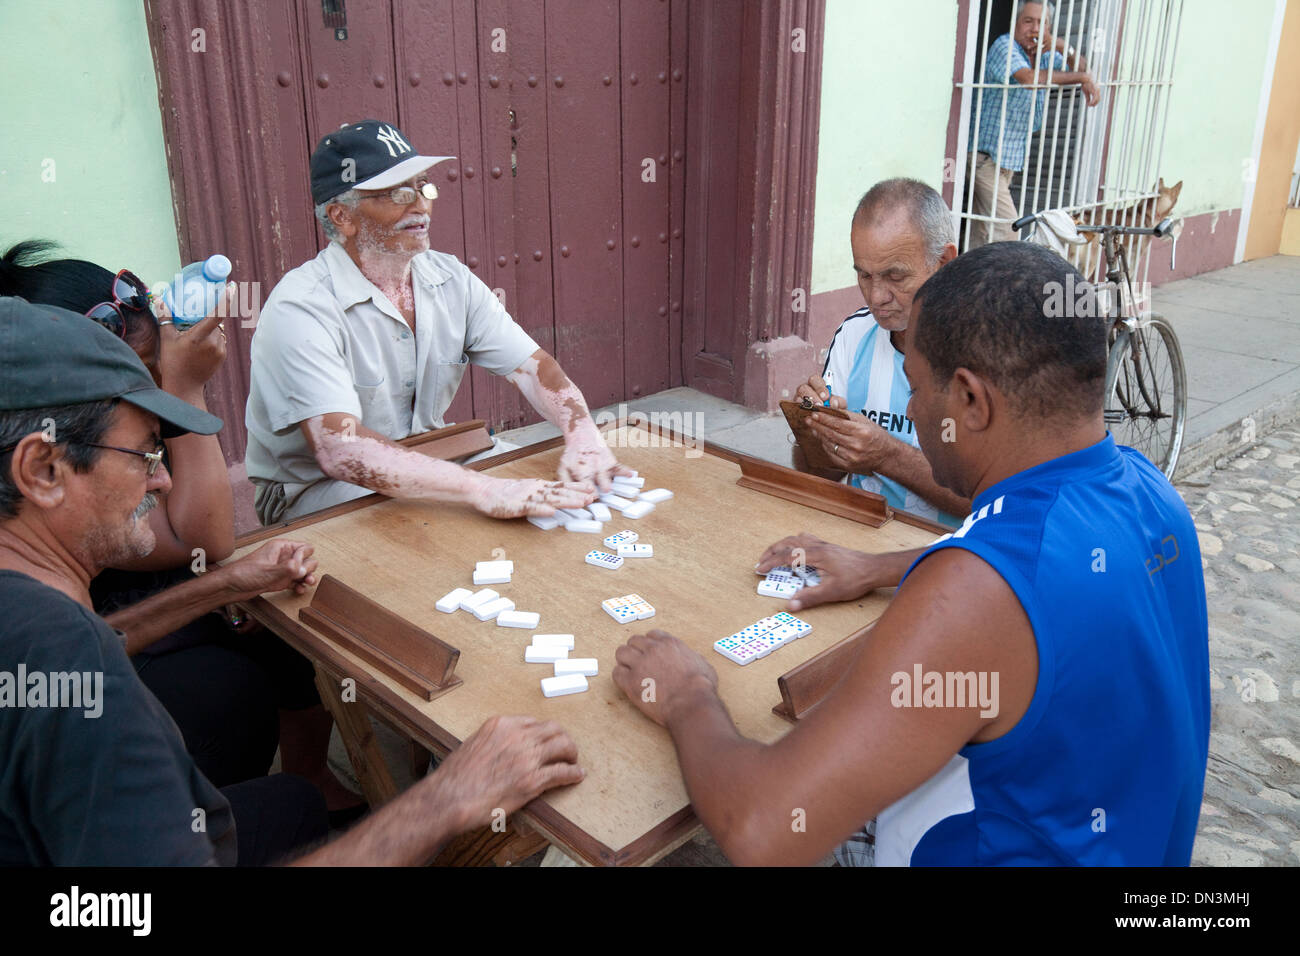 Les hommes jouent aux dominos dans la rue - exemple de la culture cubaine, Trinidad, Cuba, Caraïbes, Amérique Latine Banque D'Images